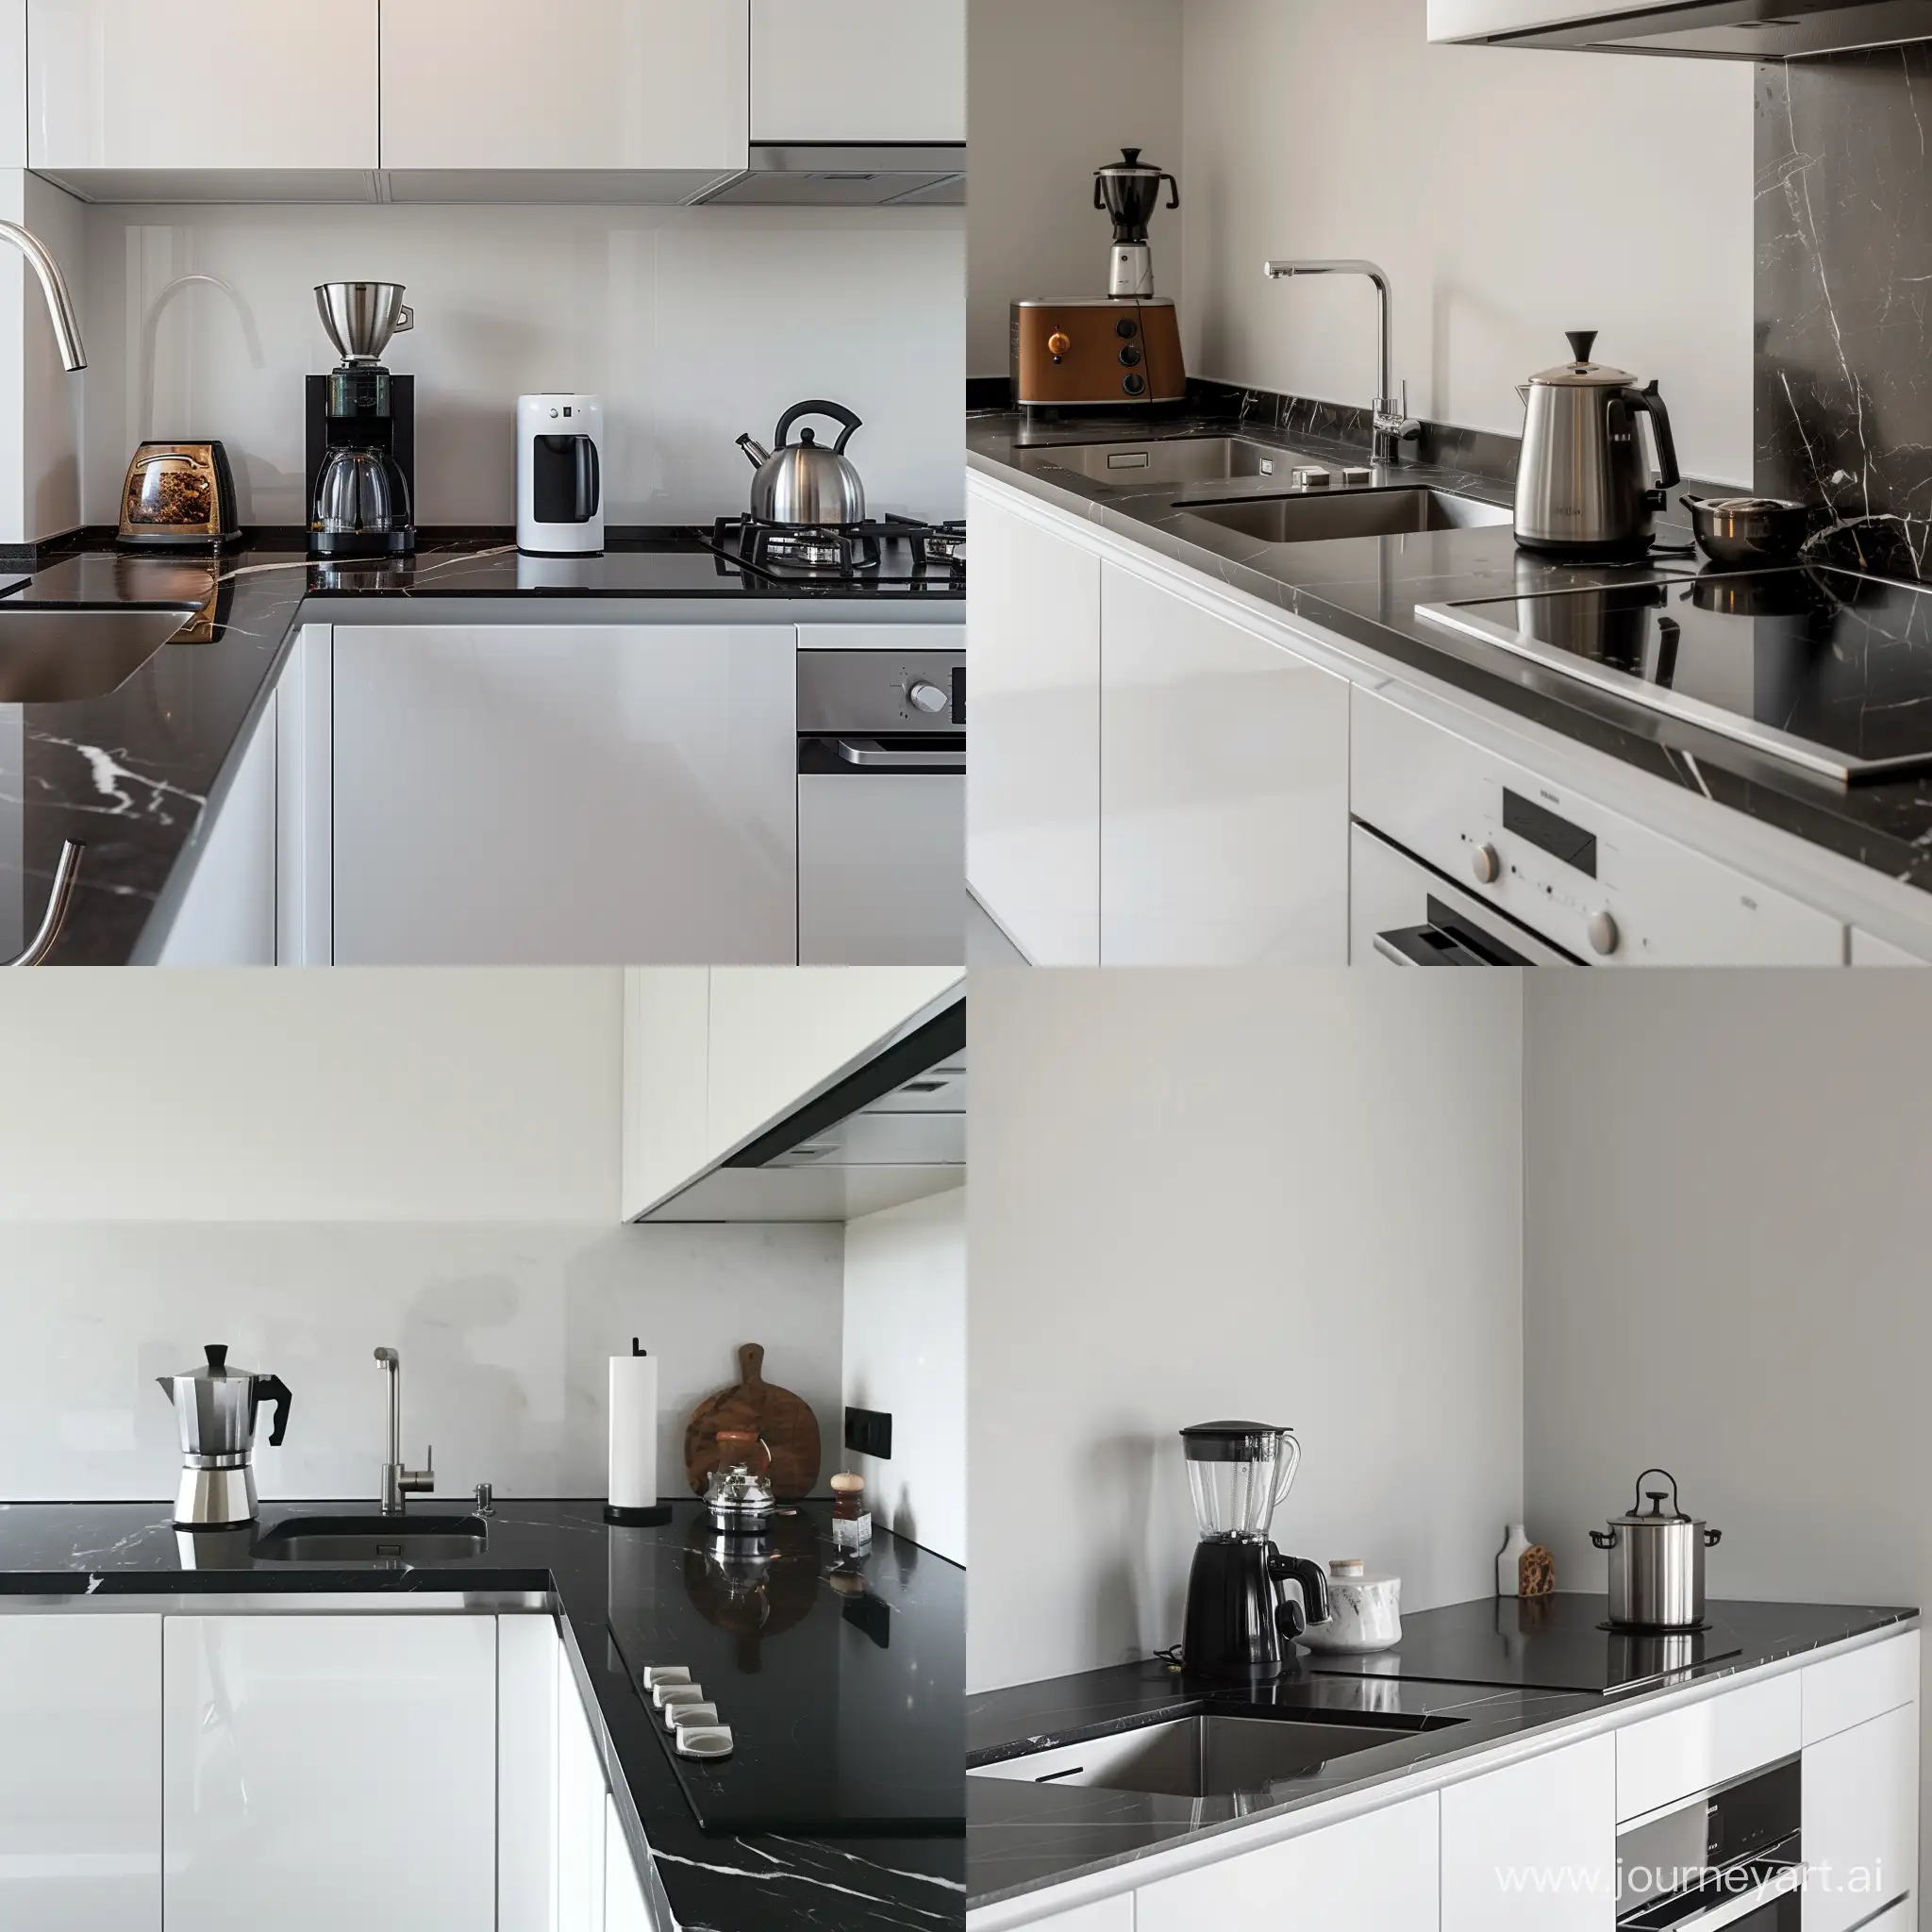 Dettaglio cucina bianca moderna con top nero marmo a destra piano a induzione con sopra una caffettiera moka a sinistra  lavandino in acciaio